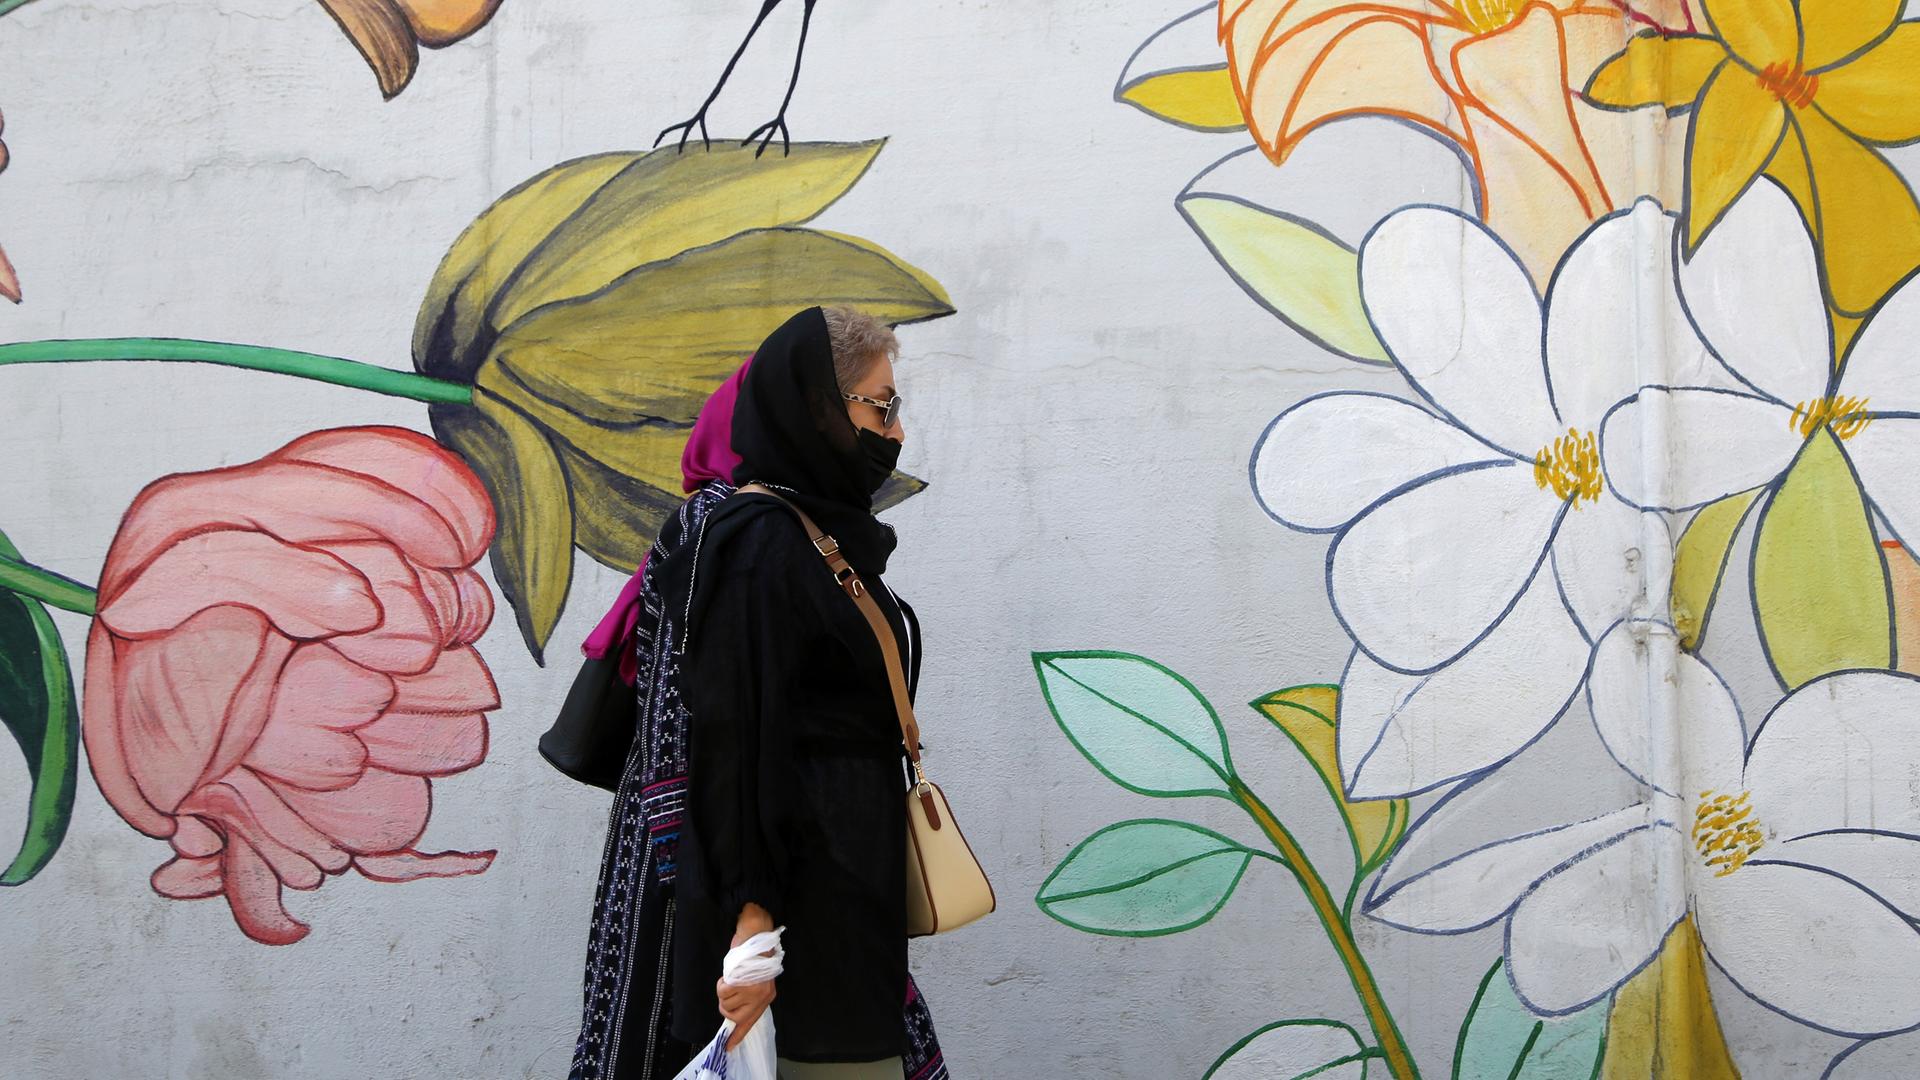 Eine Frau mit Kopftuch läuft an einem Wandbild mit Blumen und Vogel in einer Straße in Teheran vorbei.